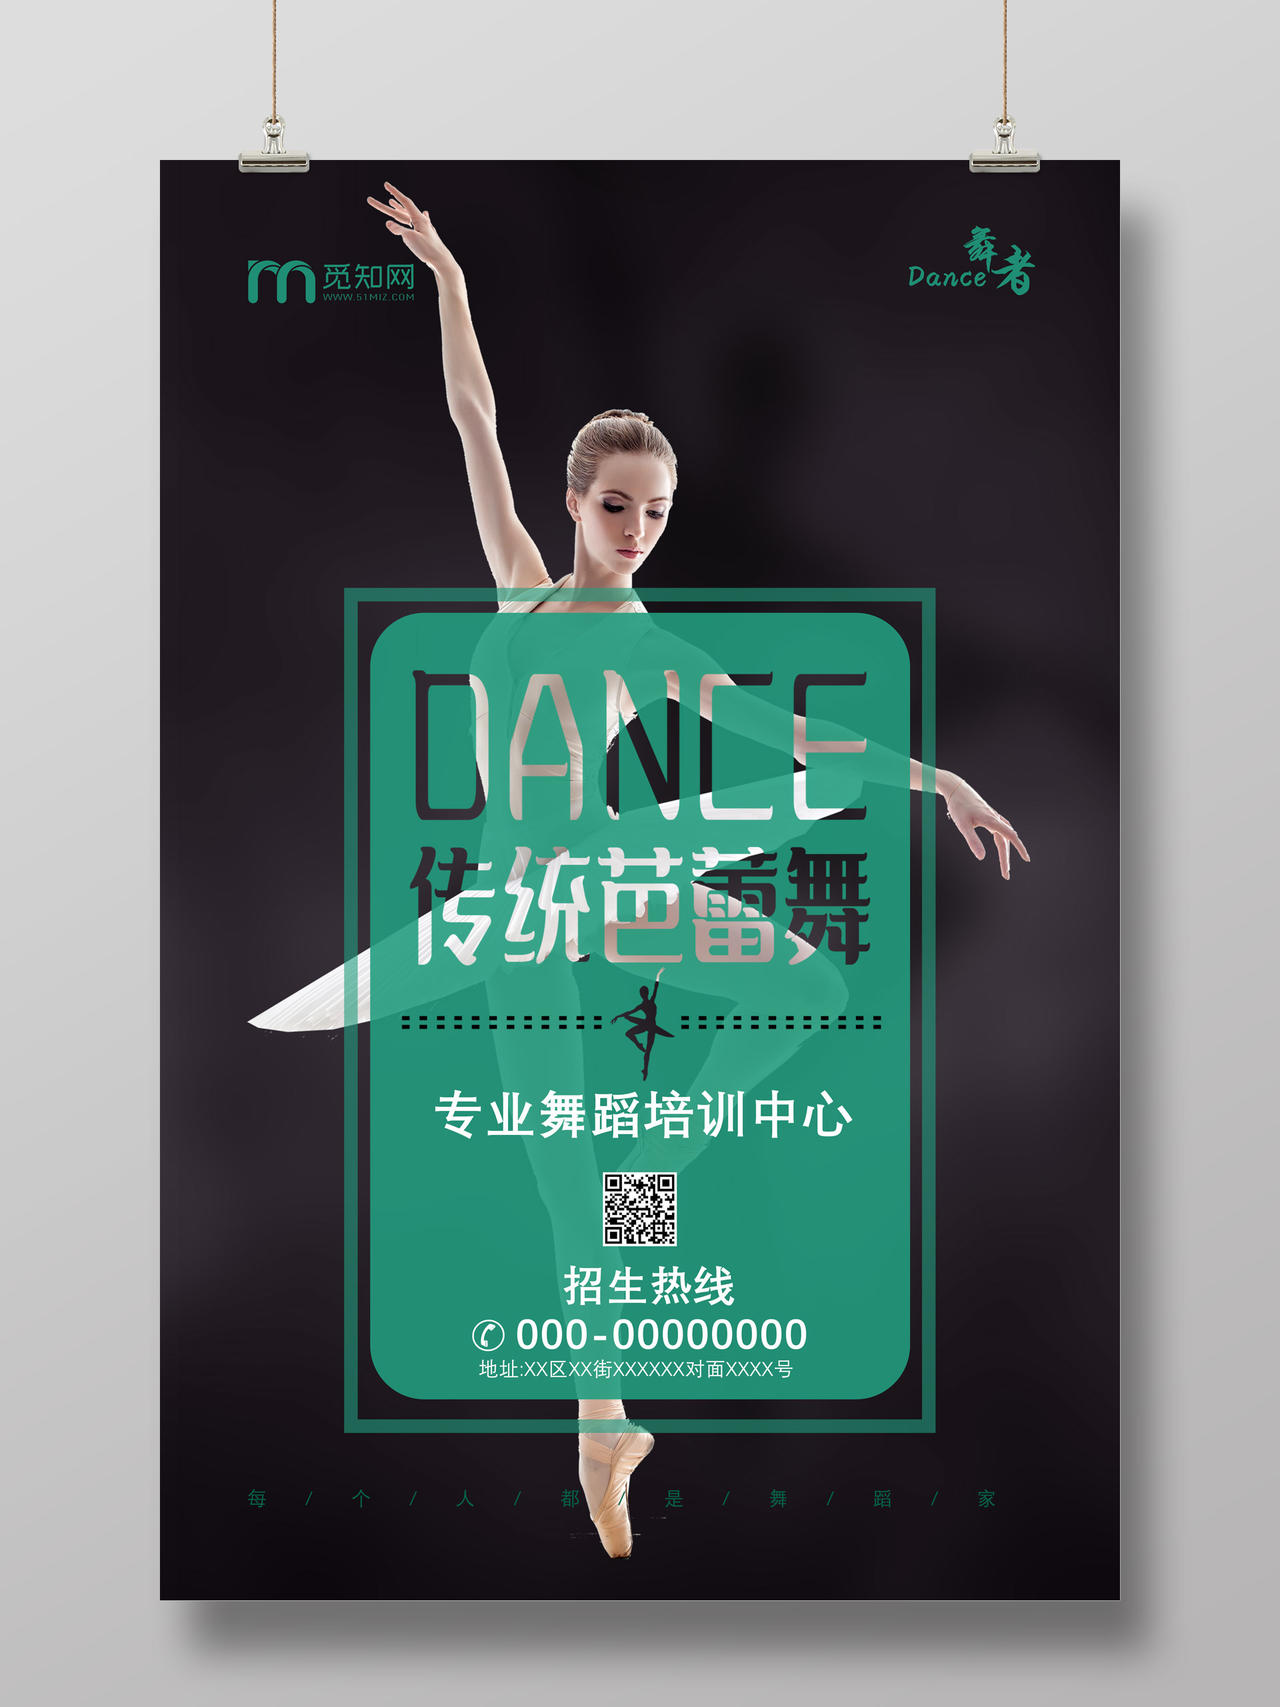 绿色传统芭蕾舞专业舞蹈培训中心宣传海报